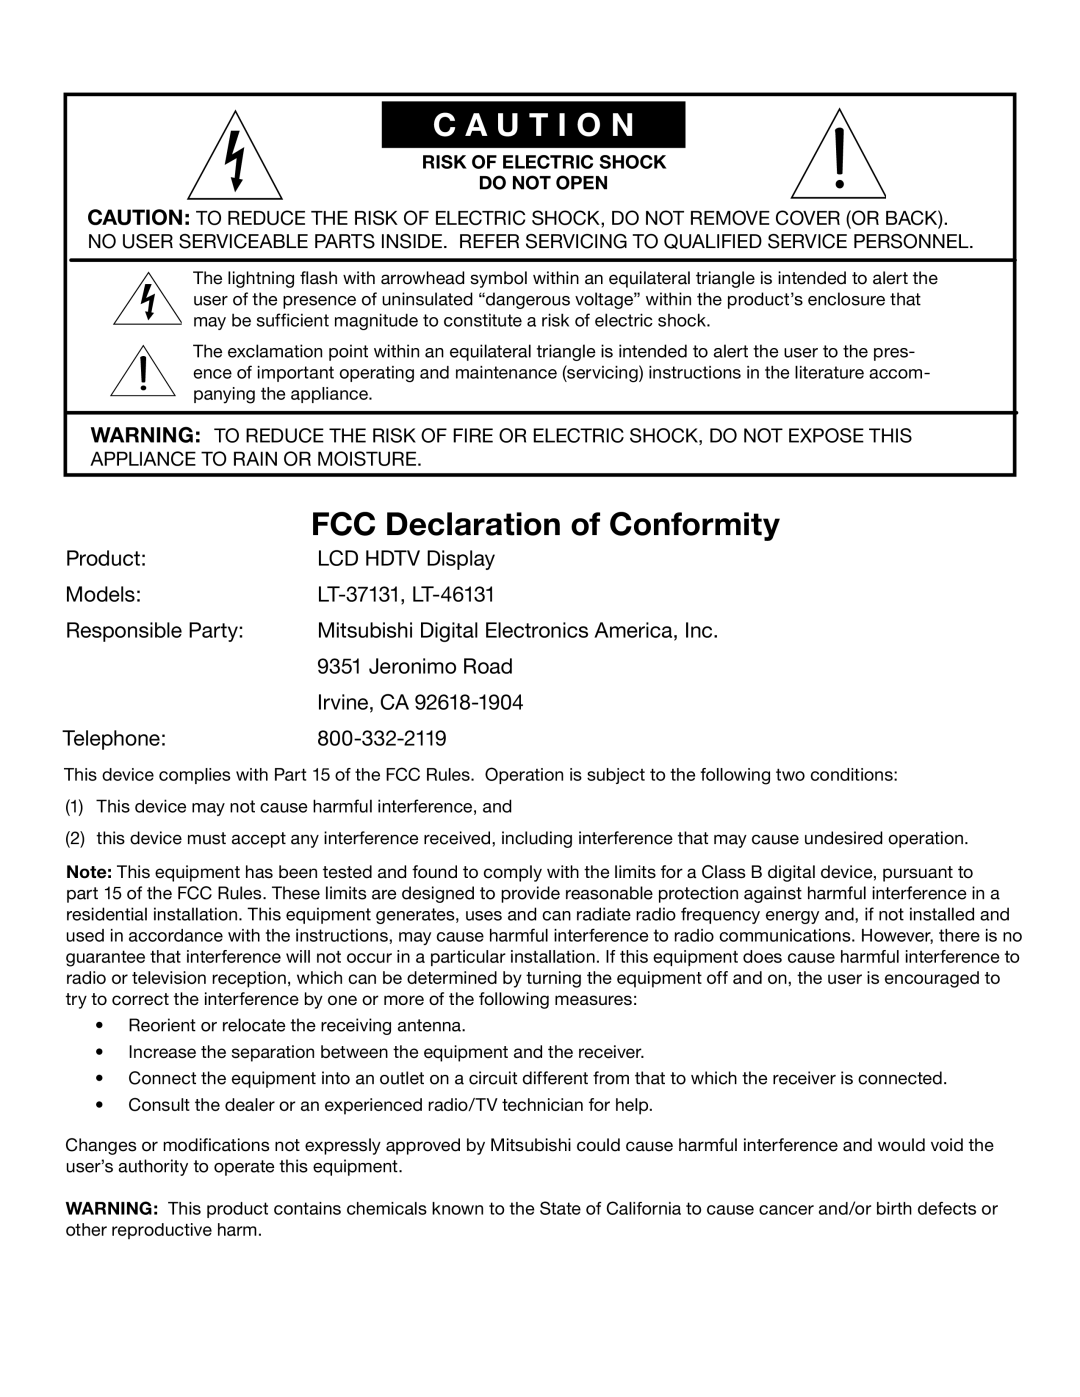 Mitsubishi Electronics LT-37131 FCC Declaration of Conformity, C A U T I O N, Product, LCD HDTV Display, Models, Telephone 